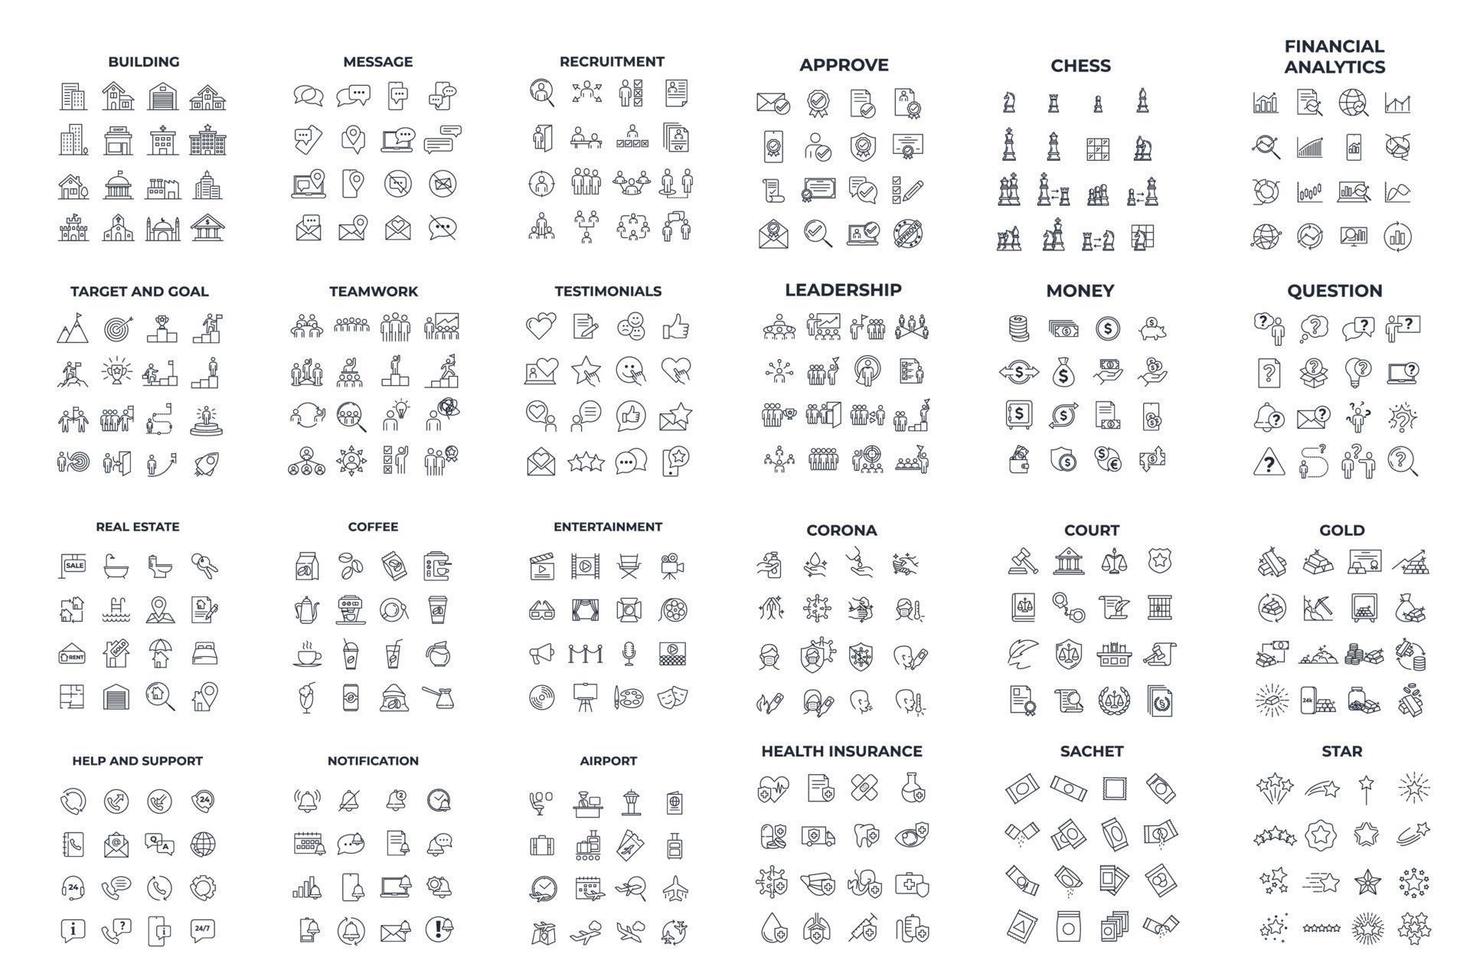 modelo de símbolo de pacote de ícones de mega coleção para ilustração em vetor de logotipo de coleção de design gráfico e web